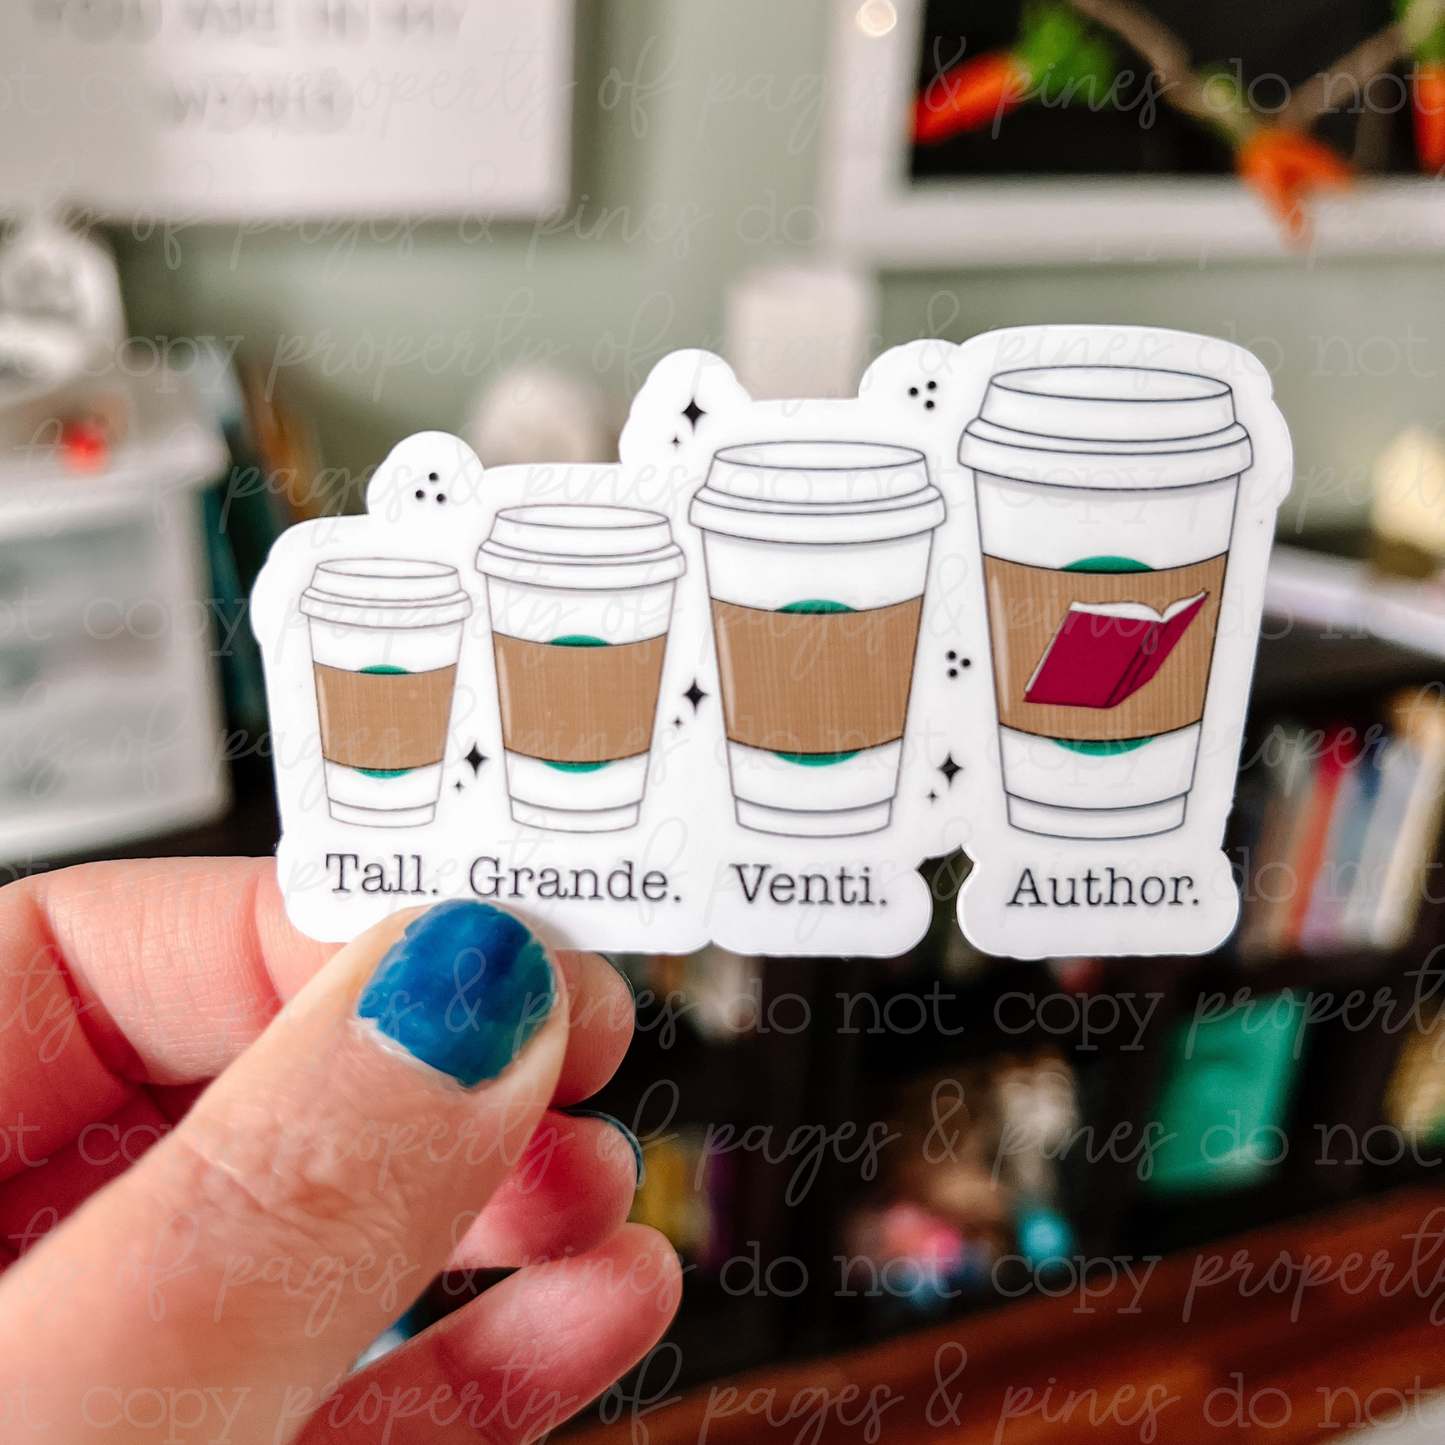 Author Coffee Sizes